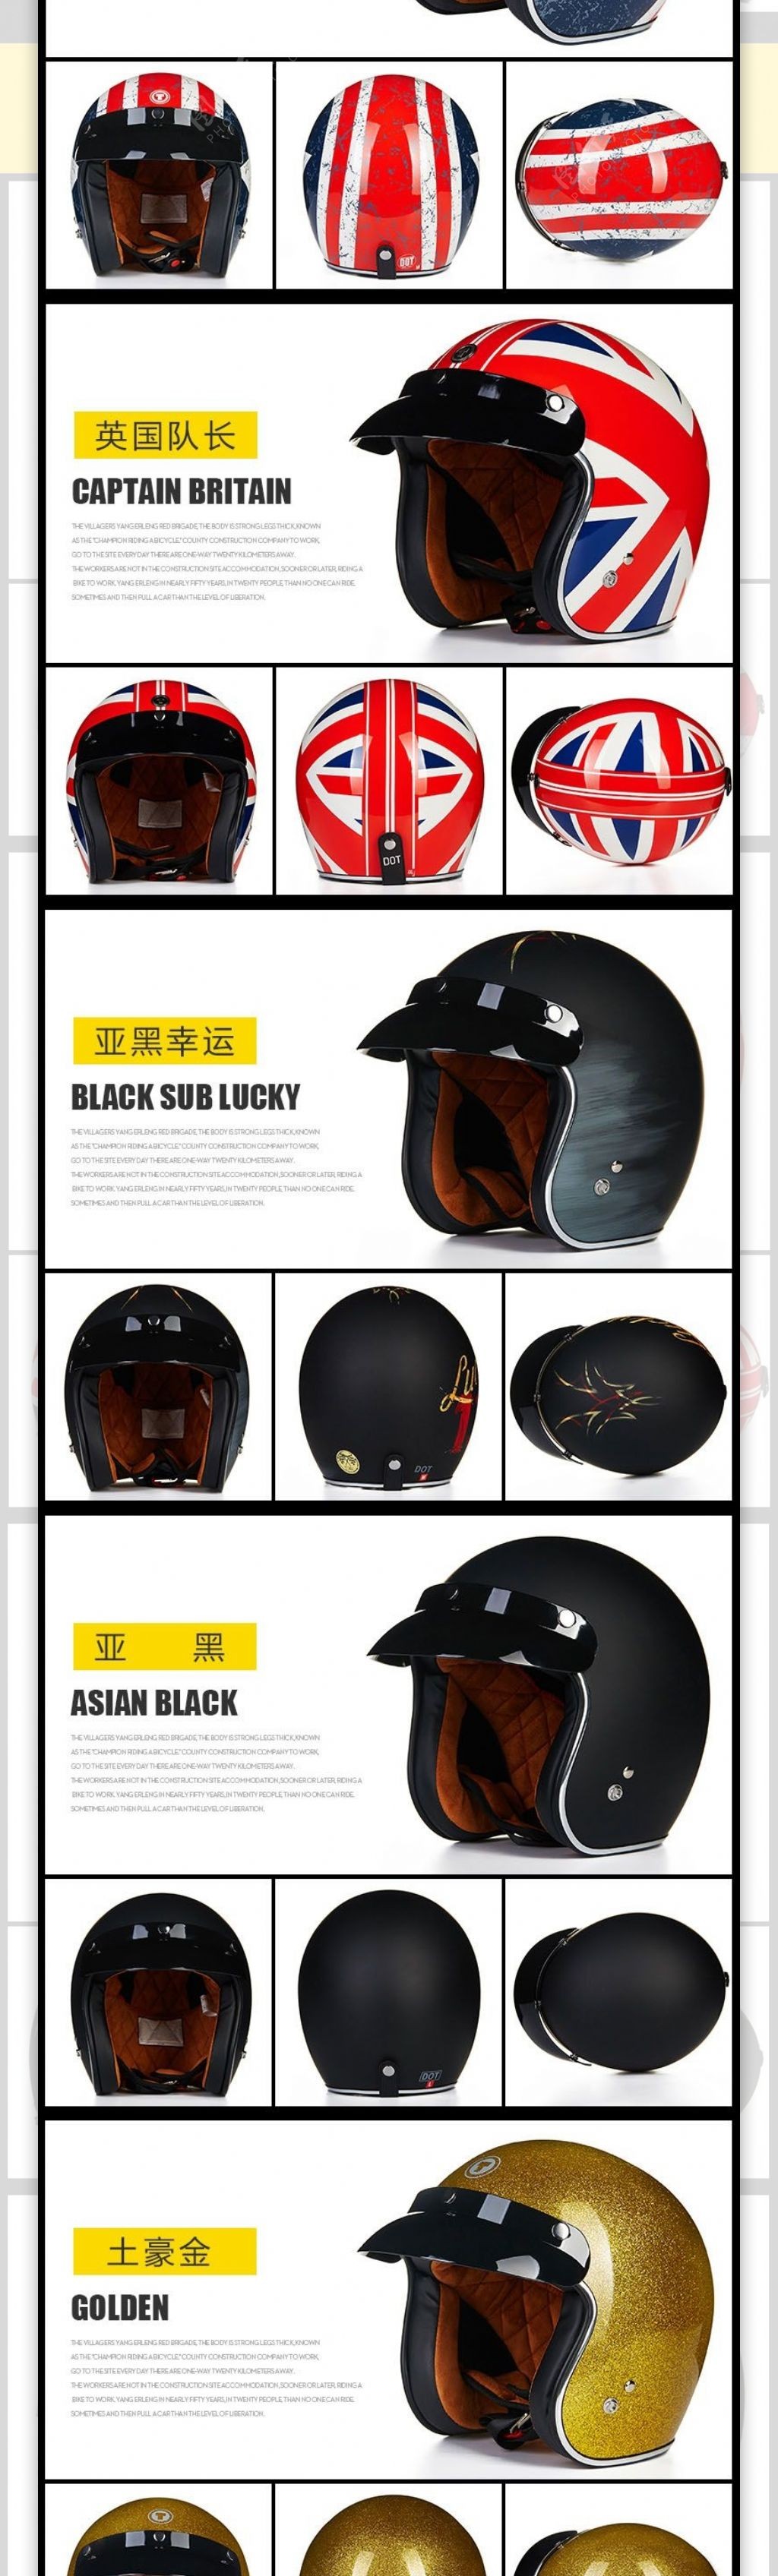 哈雷摩托车头盔详情页设计